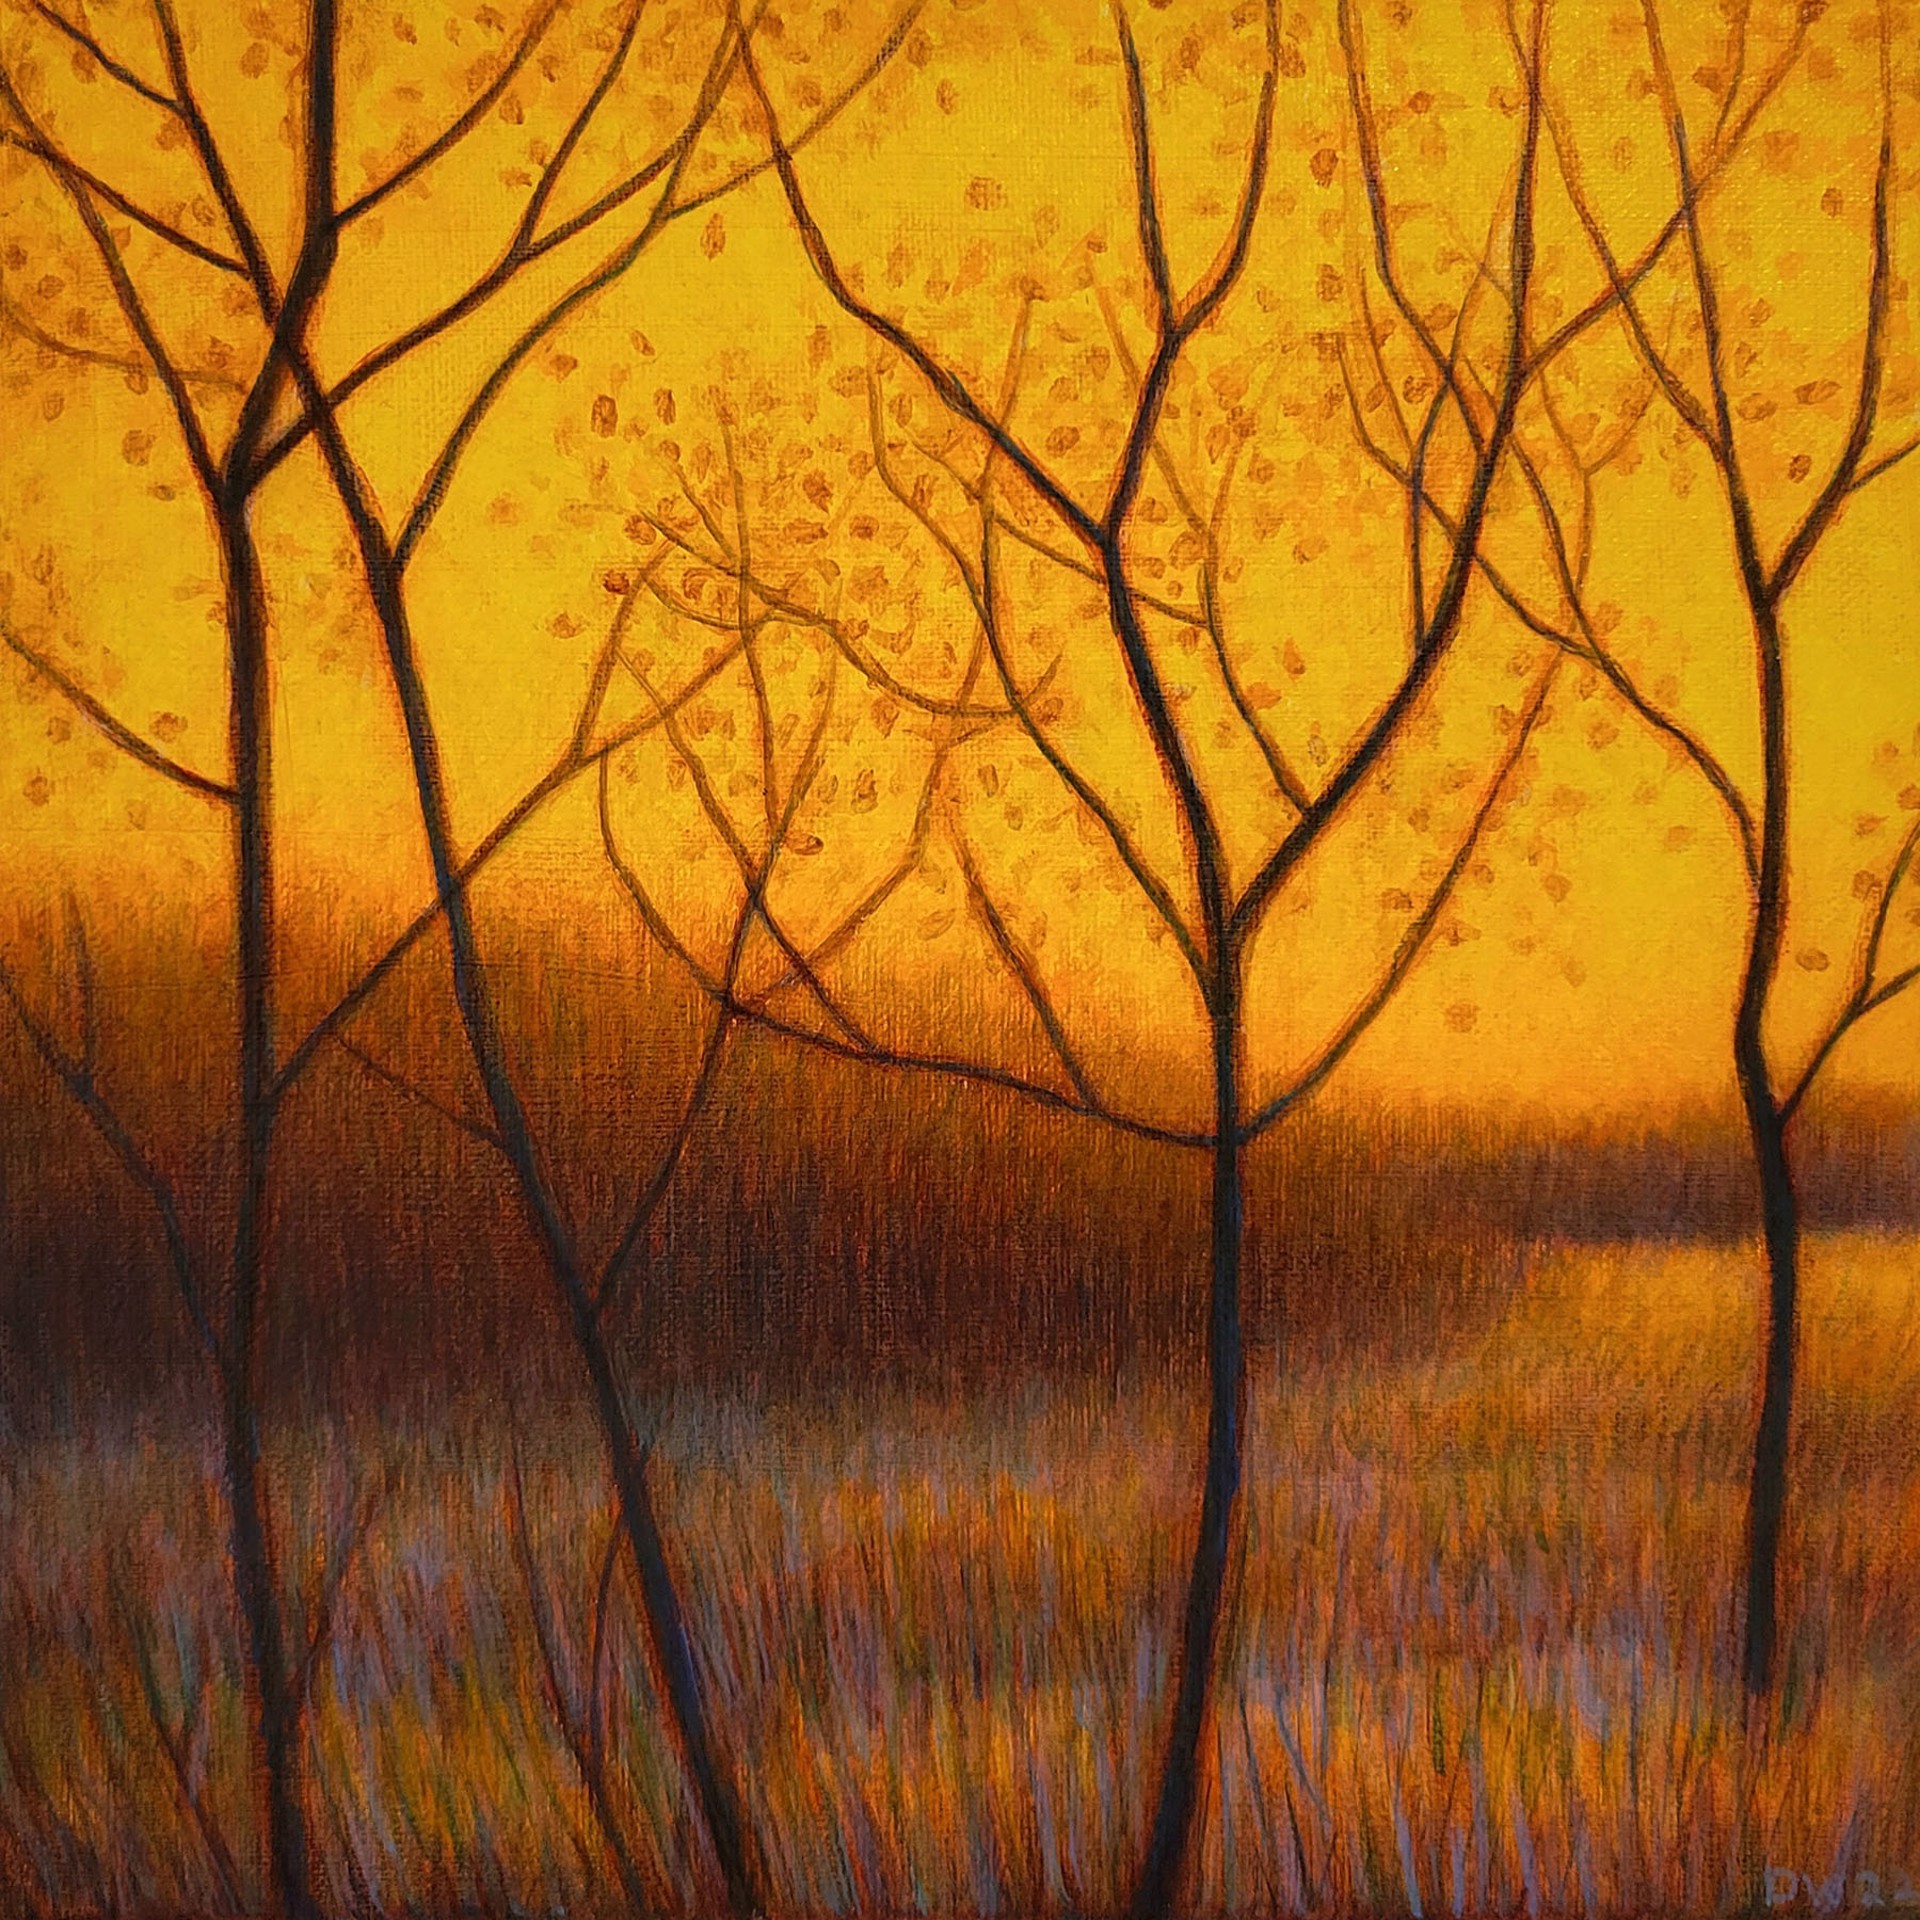 Prairie Sunset by Debbie Wozniak-Bonk